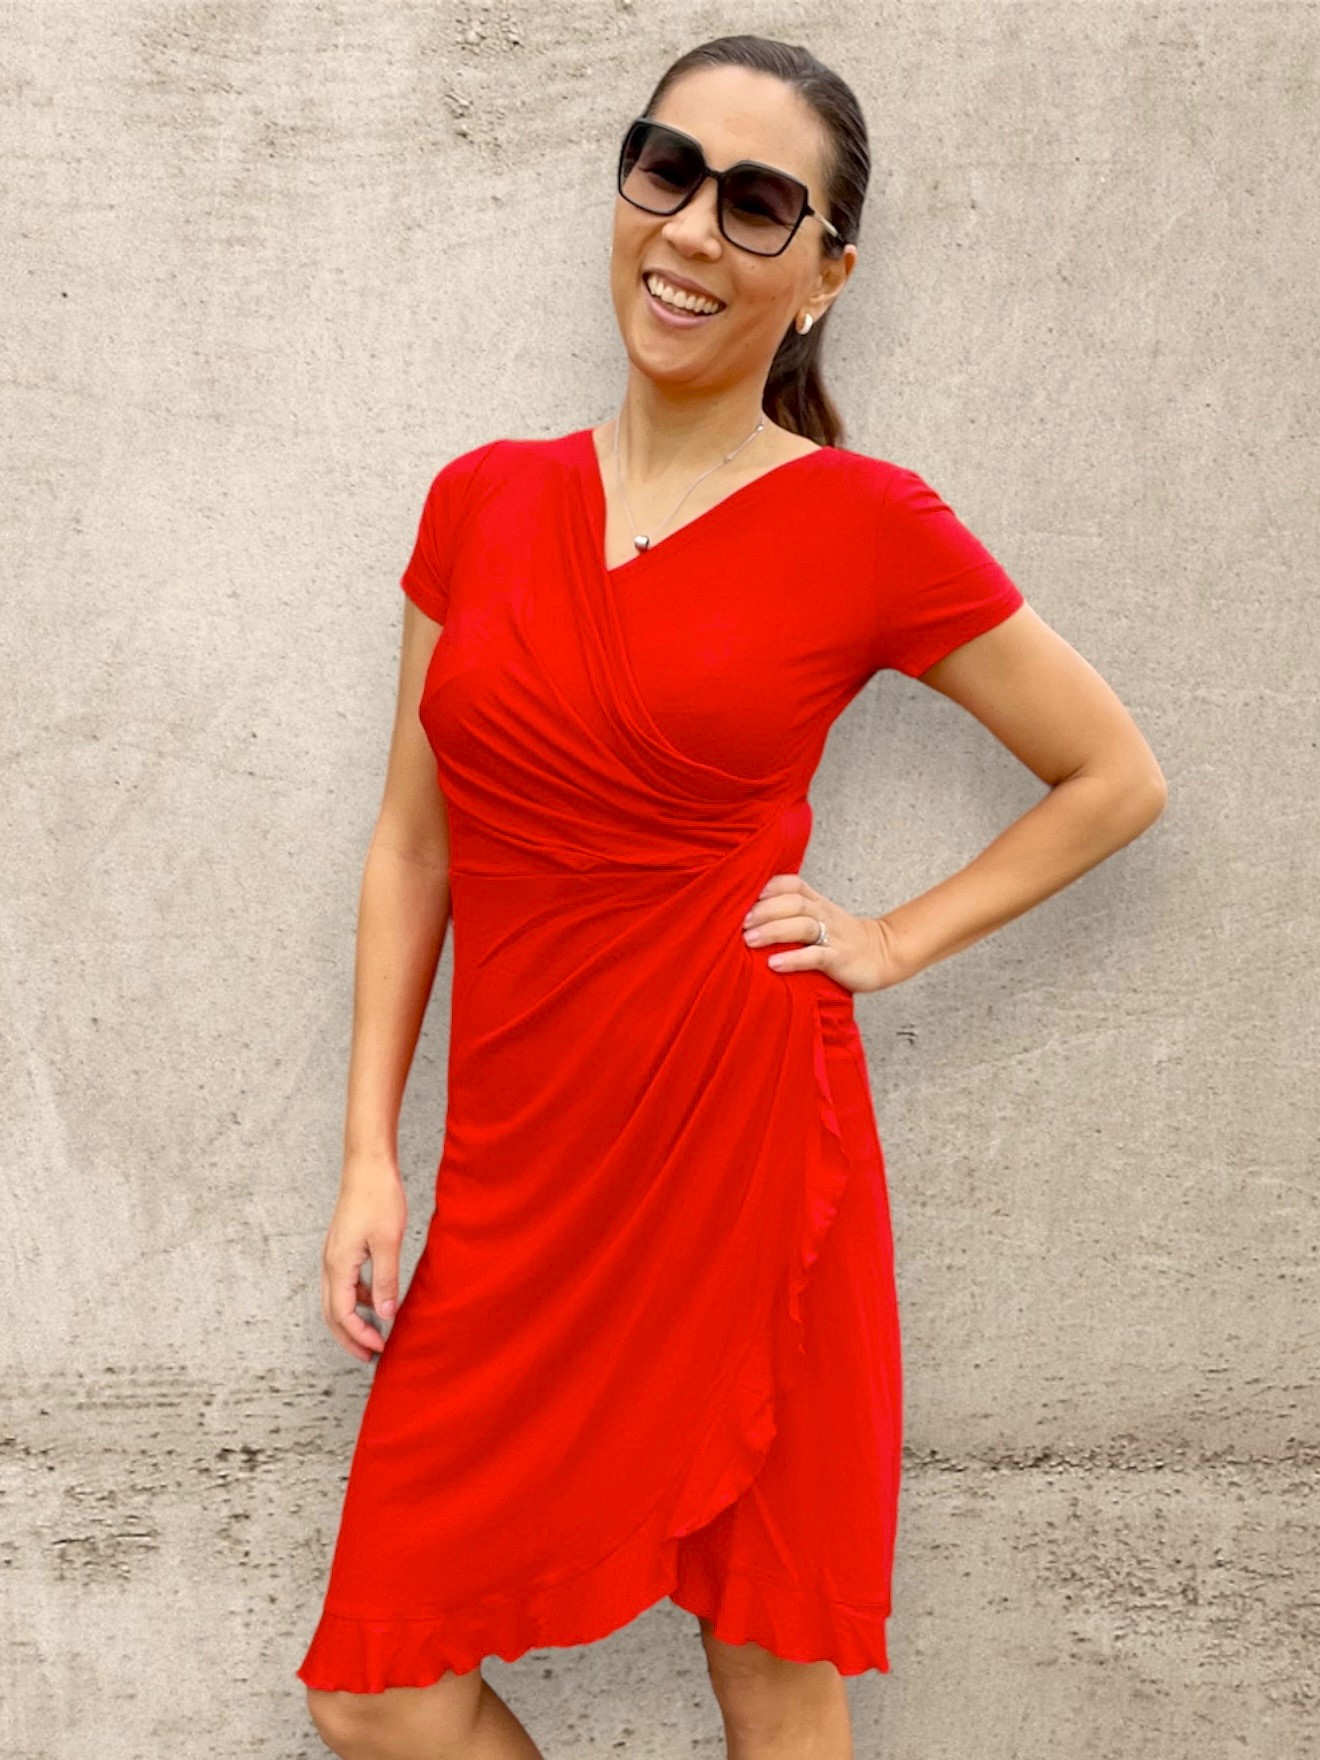 Omlottklänning I Röd klänning I Trikåklänning röd I Jerseydress I Röd klänning med stretch I Feminin klänning I Sommarklänning I Sköna klänningar